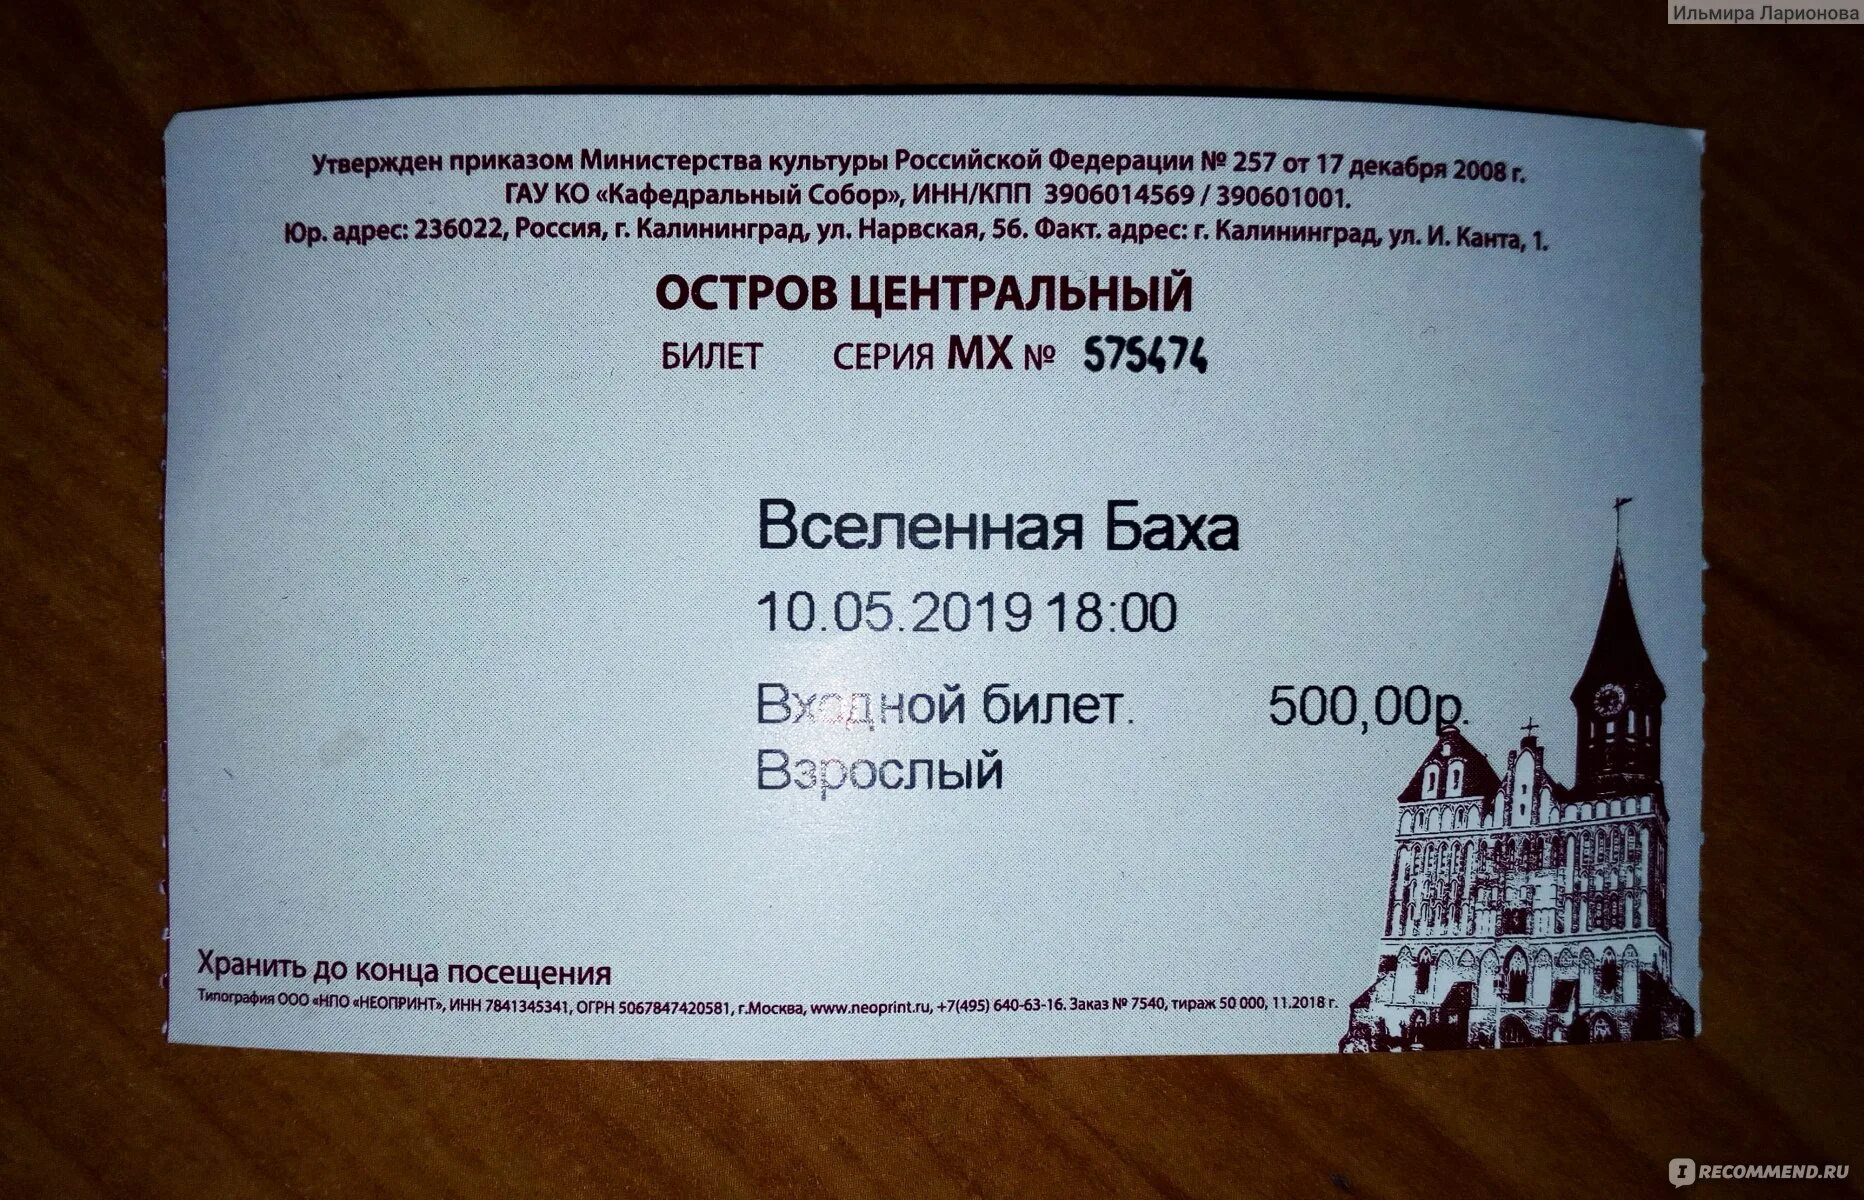 Орган в калининграде купить билет. Расписание кафедрального собора в Калининграде.